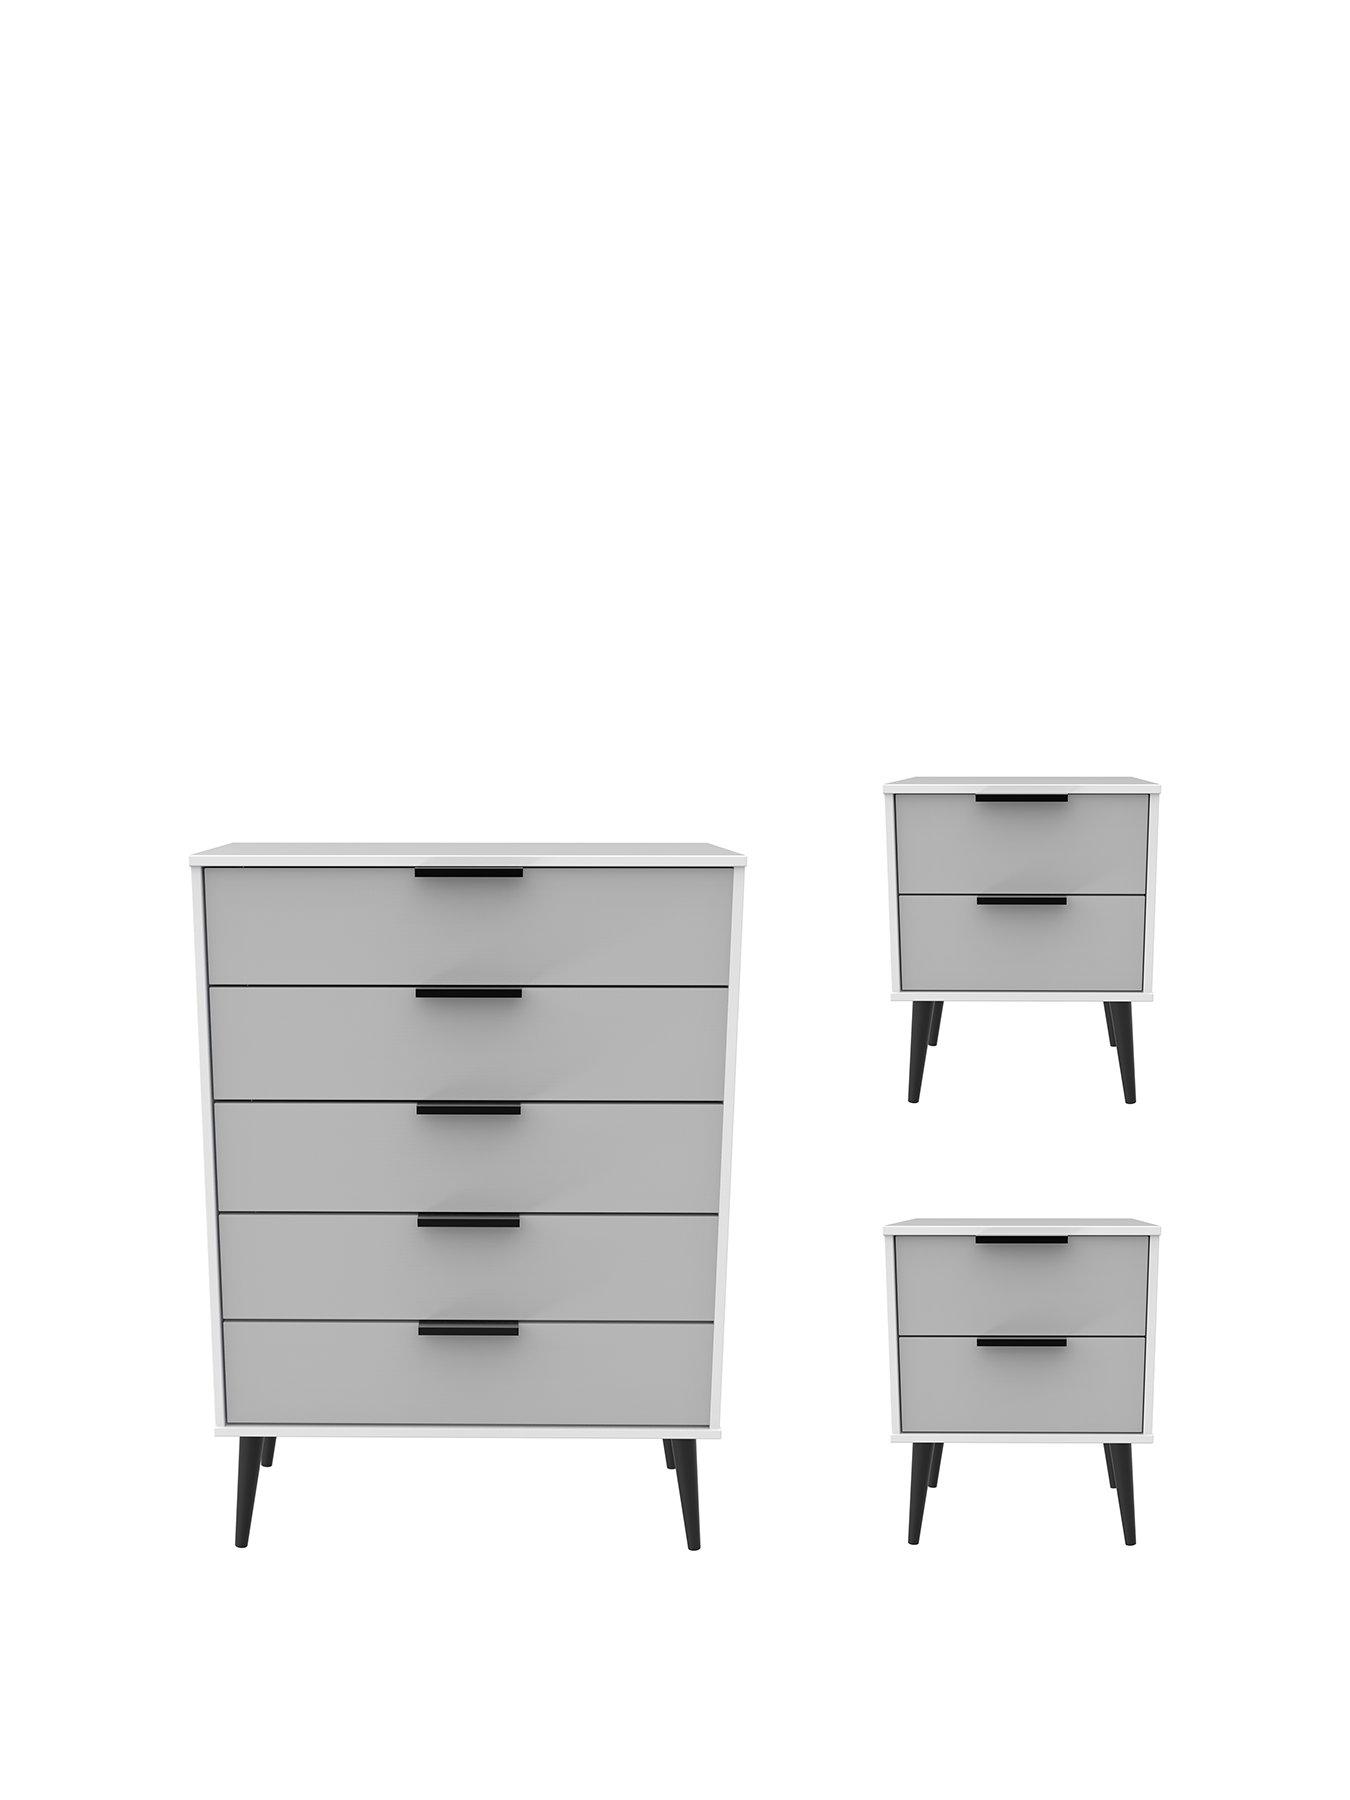 Cream// Pine Furniture To Go Copenhagen 3-Drawer Bedside 58 x 44 x 39 cm